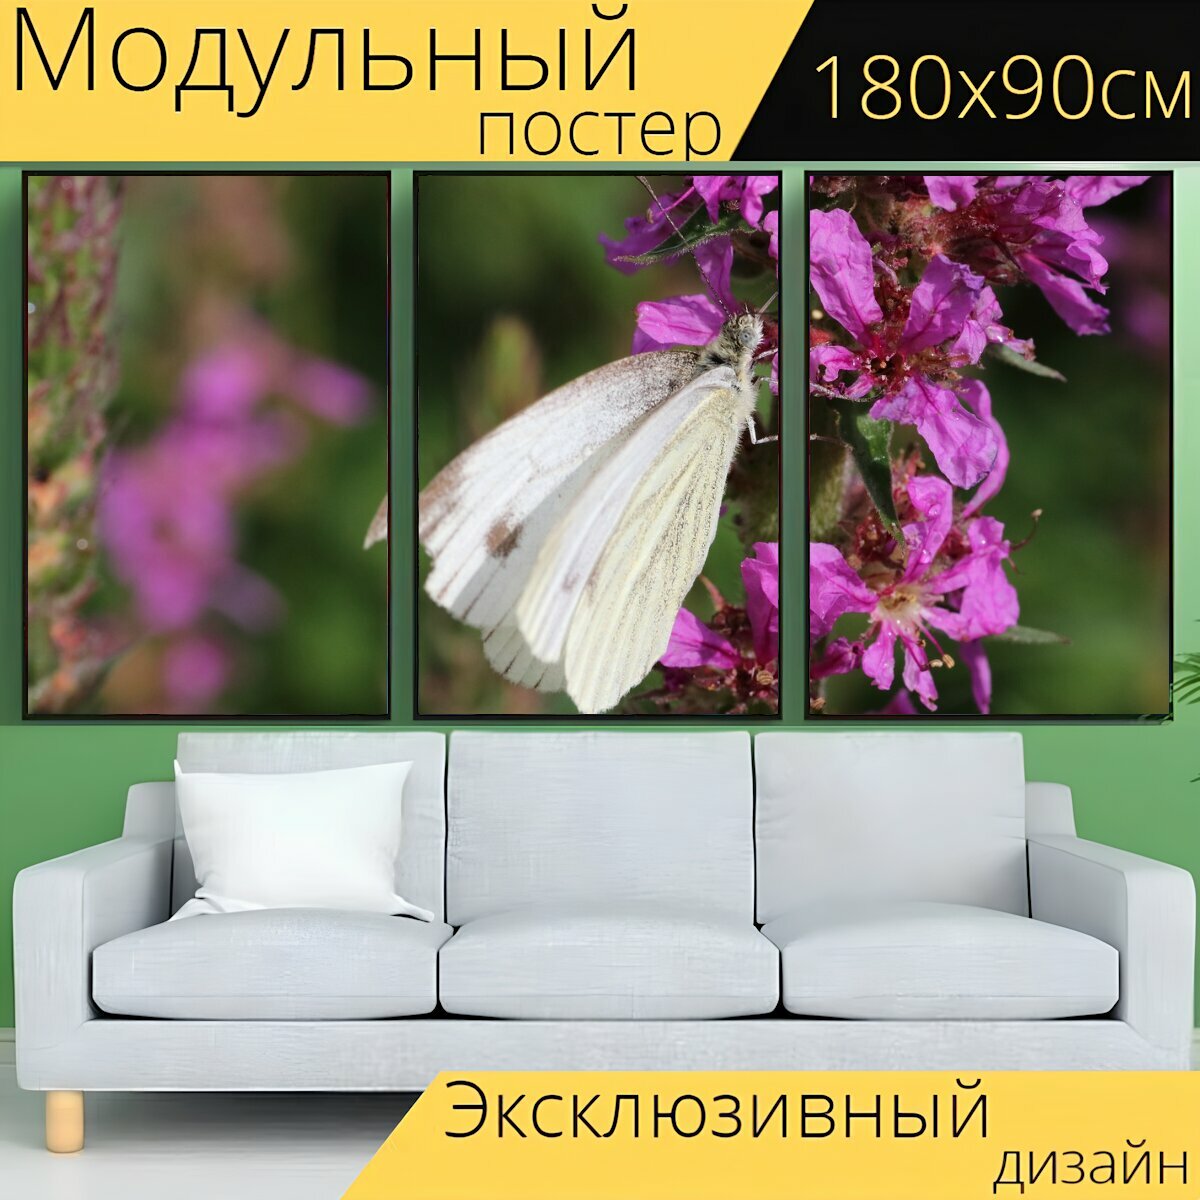 Модульный постер "Бабочка, цветы, бабочки" 180 x 90 см. для интерьера